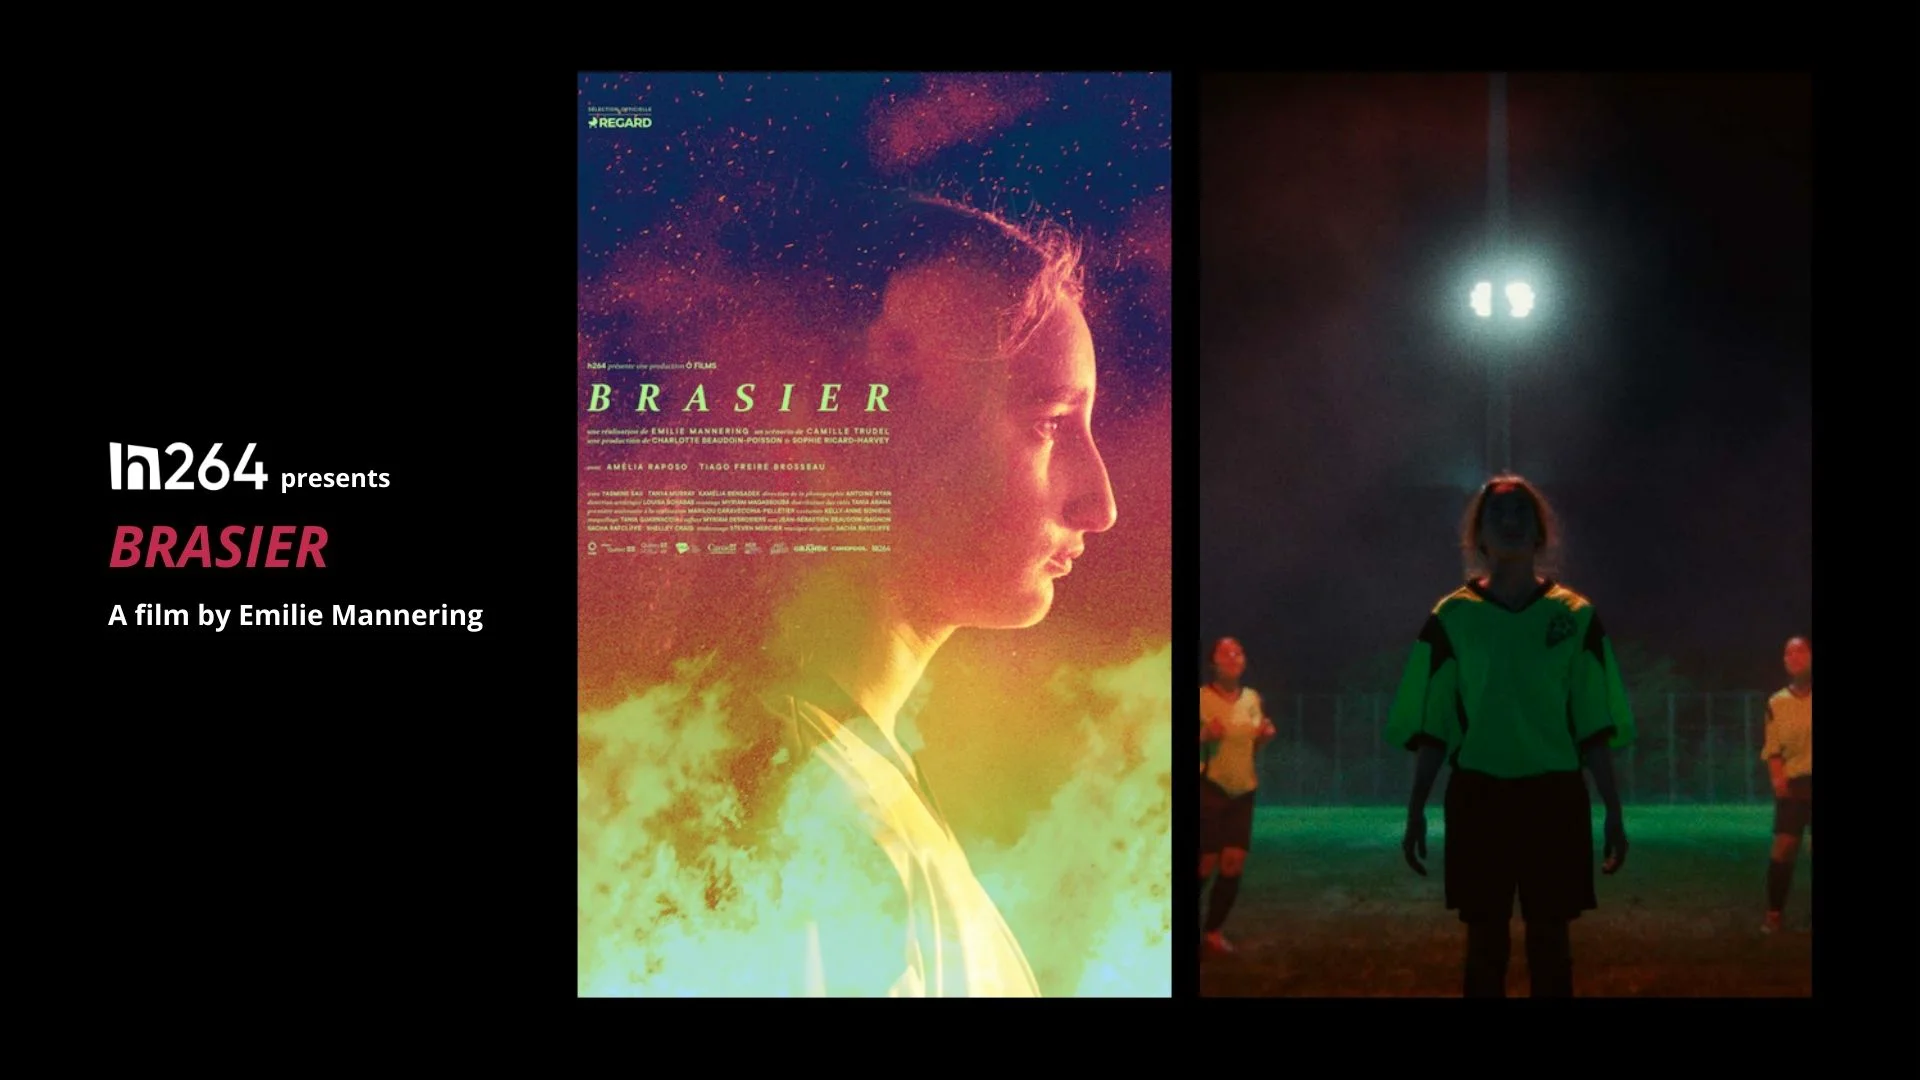 BRASIER - a film by Emilie Mannering